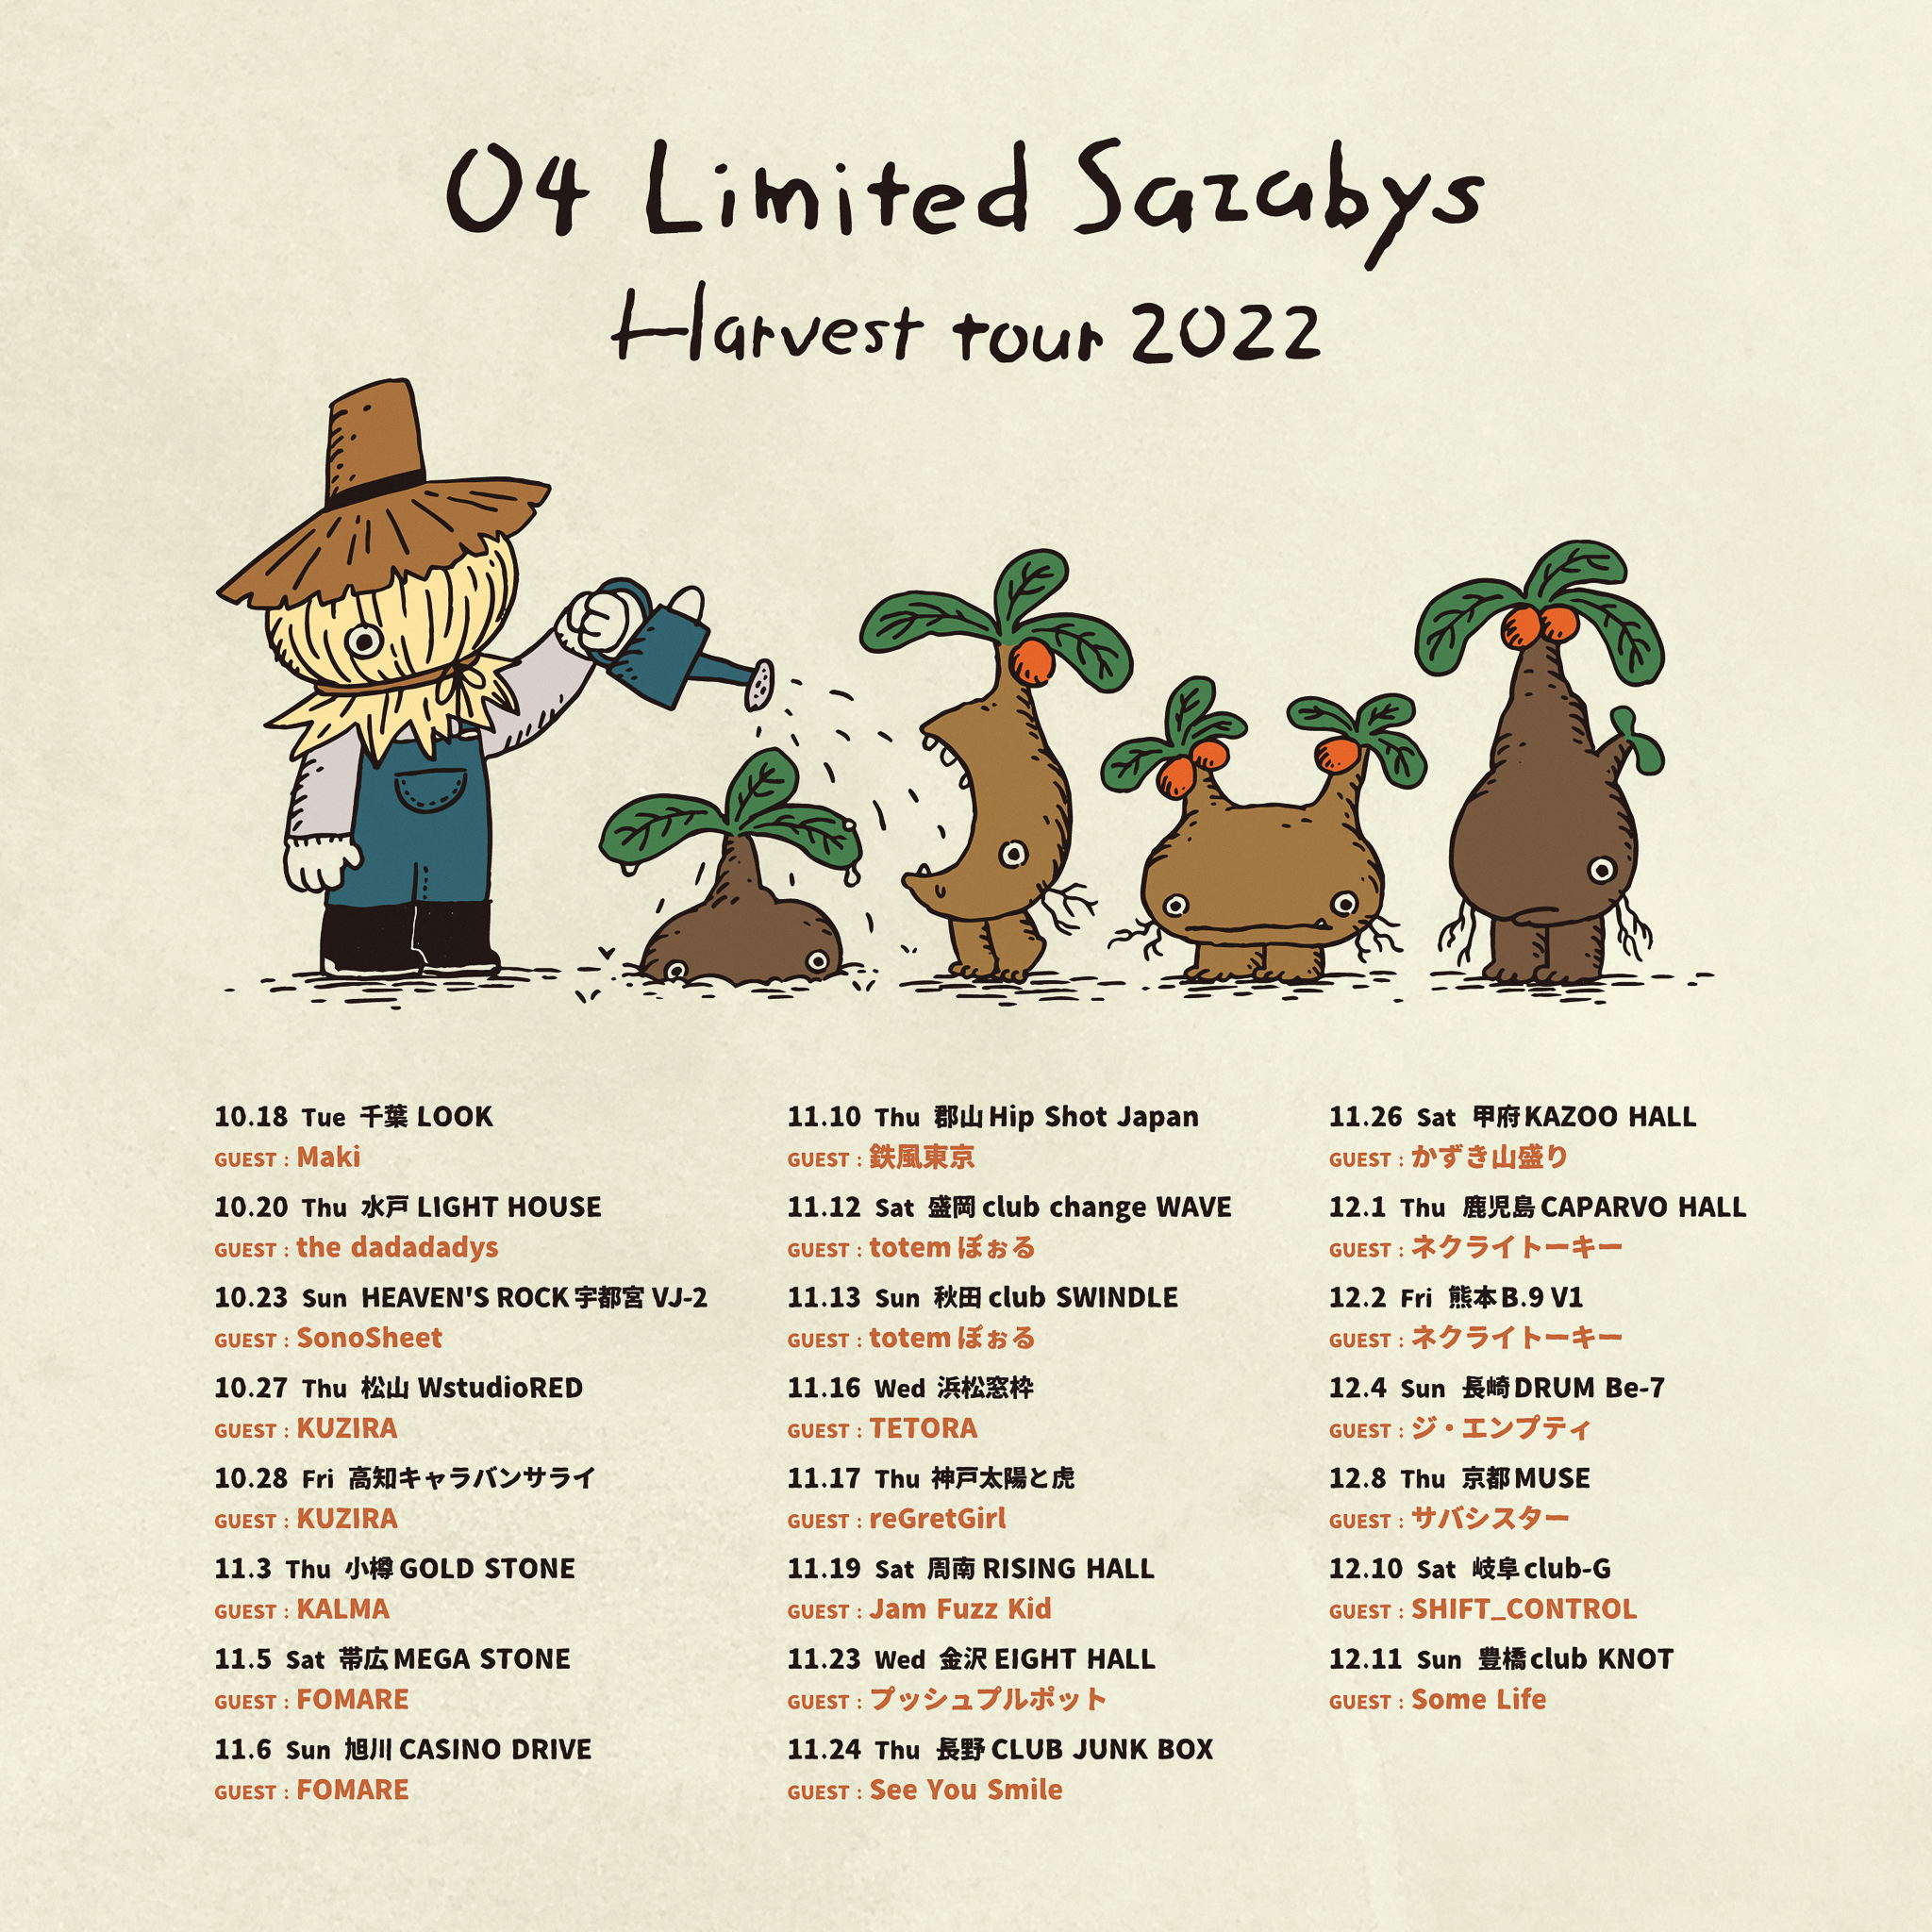 【茨城】04 Limited Sazabys "Harvest tour 2022" (水戸LIGHT HOUSE)